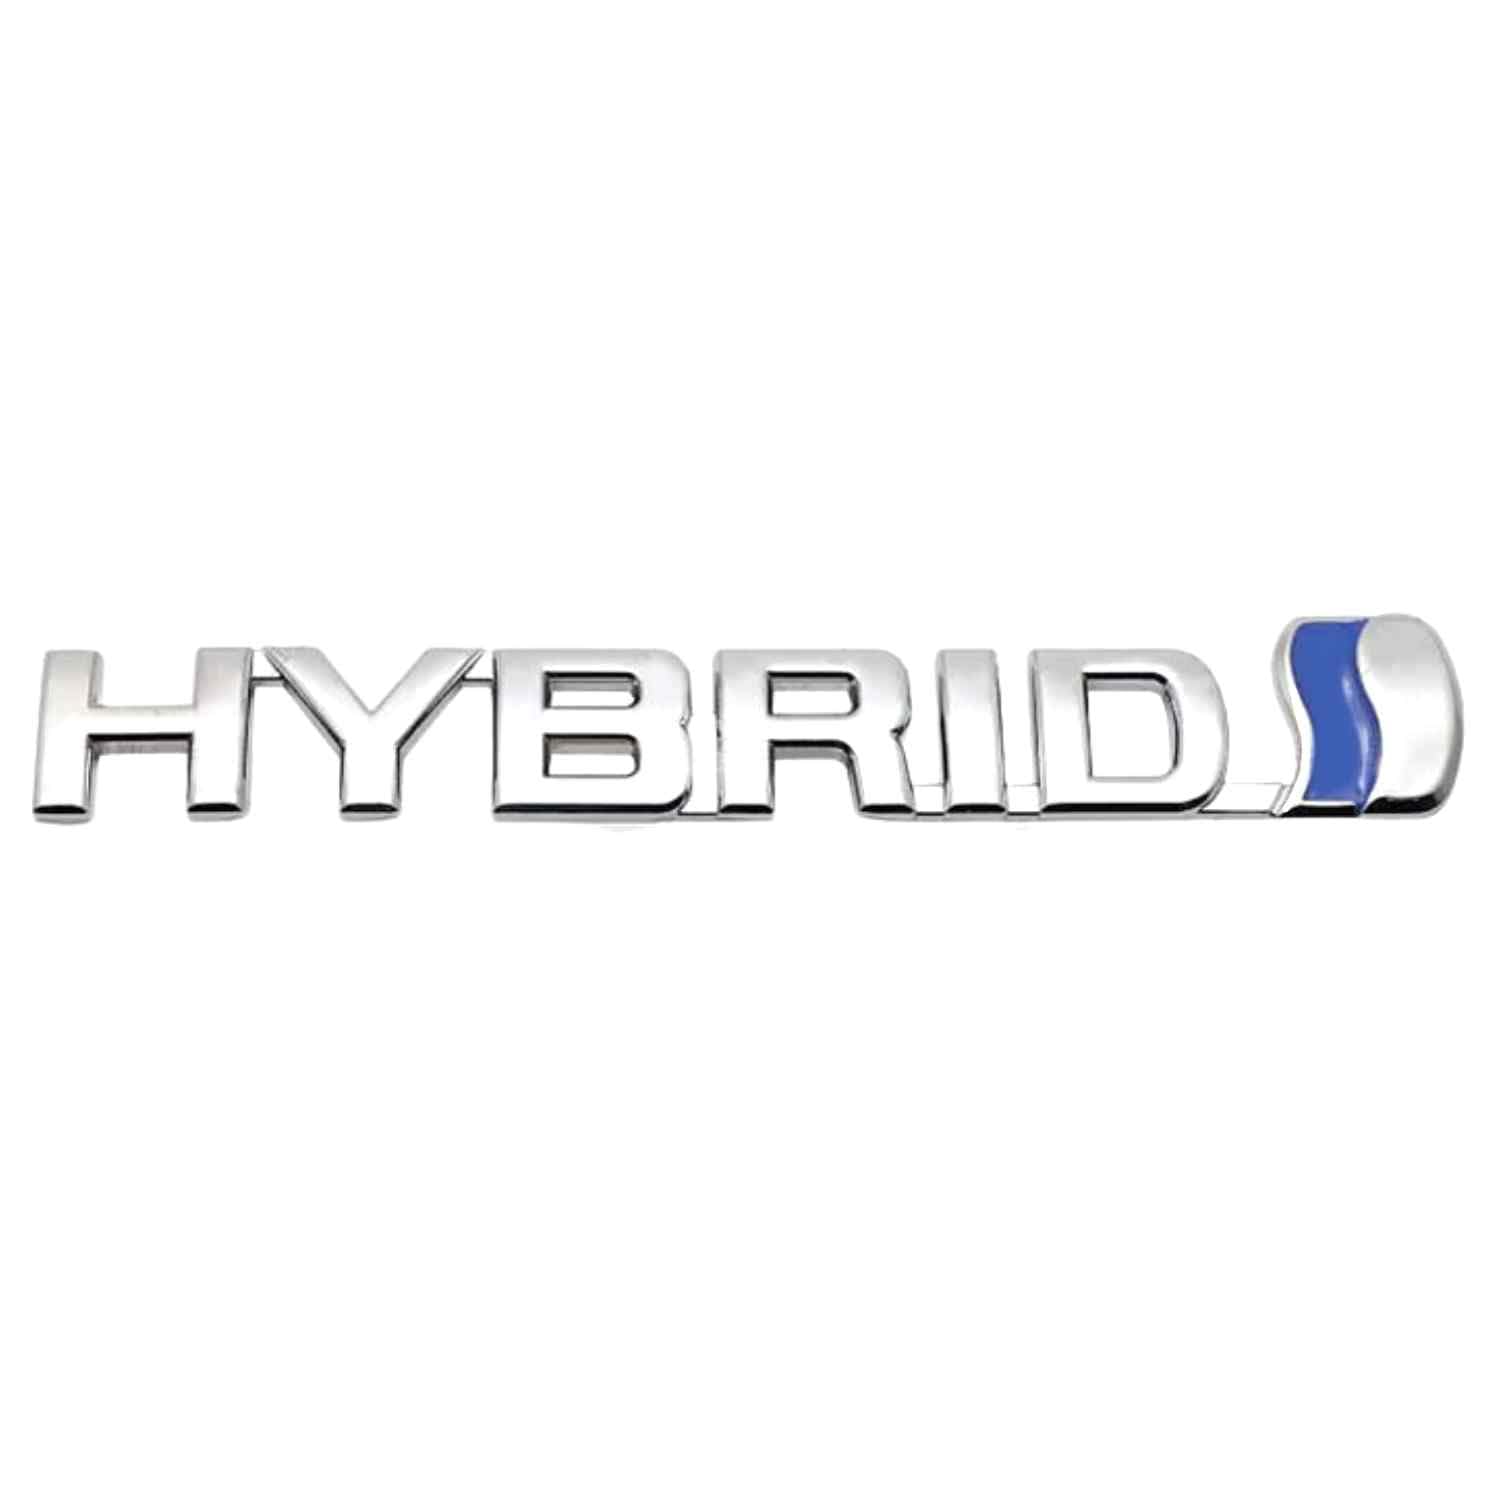 AUTOZOCO Hybrid-Emblem, Hybrid-Emblem, Hybrid-Aufkleber, Kofferraum-Aufkleber, Auto-Seiten-Emblem, kompatibel mit Toyota, Metallic, 13 x 2 cm, Silber von AUTOZOCO